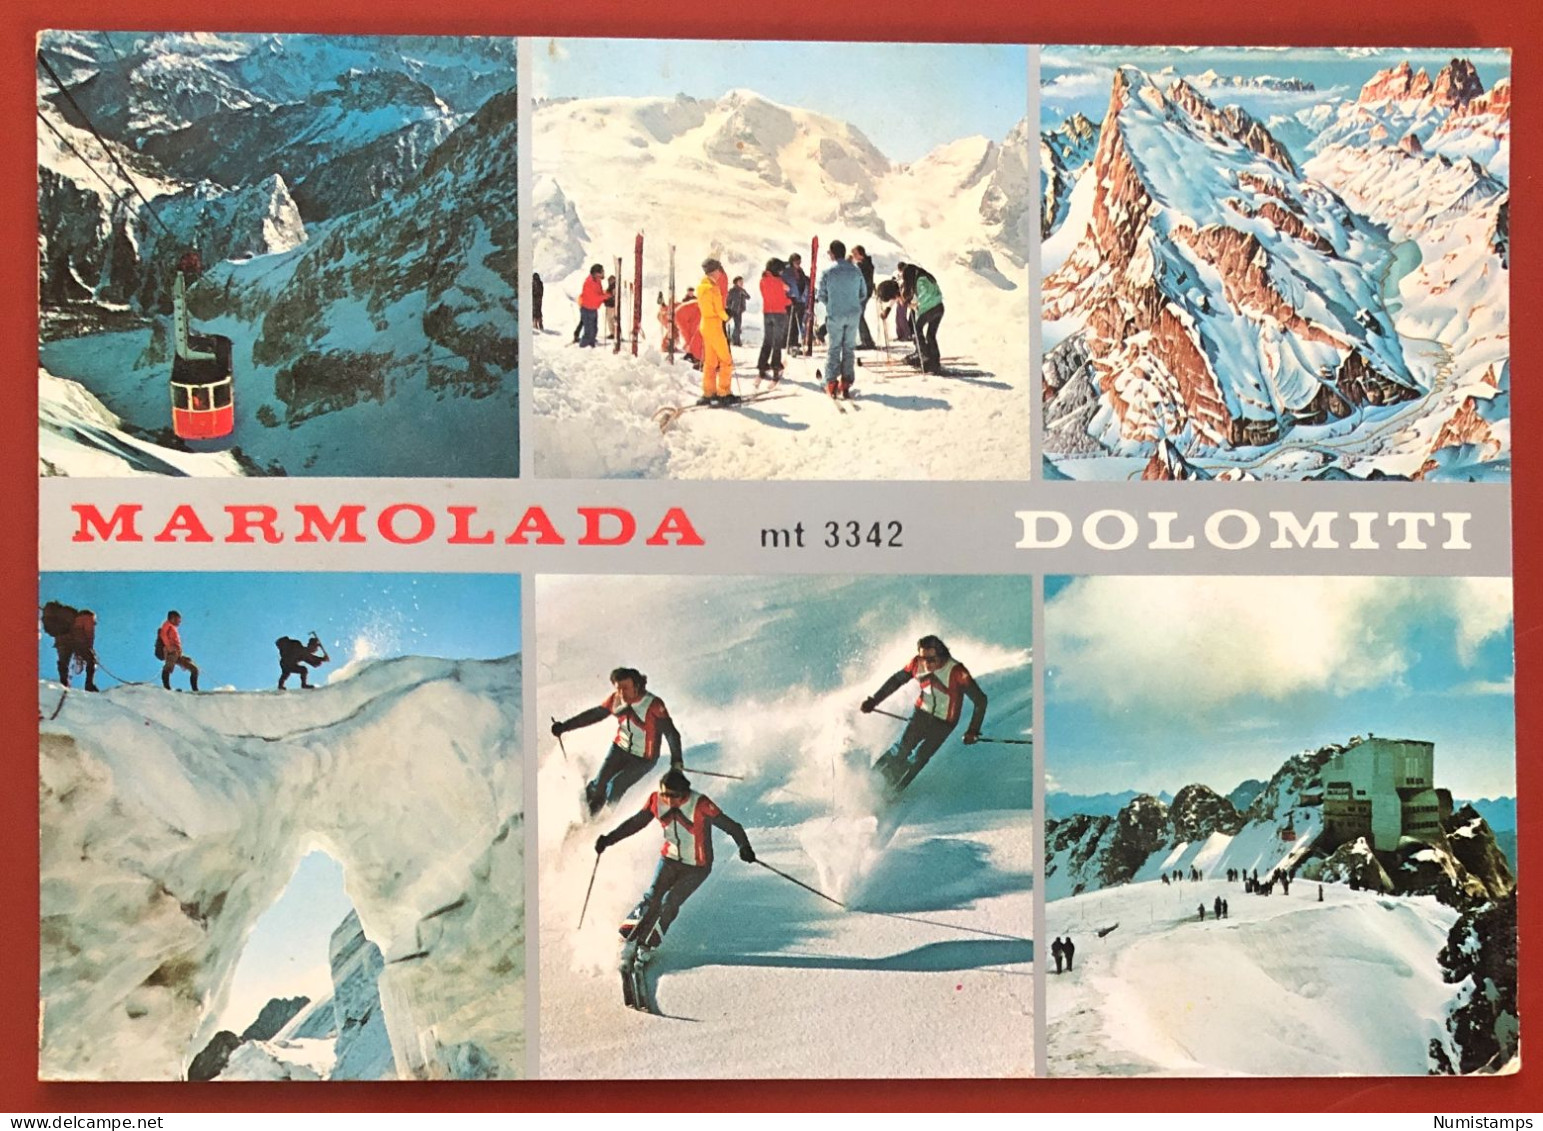 MARMOLADA M. 3342 - DOLOMITI - 1977 (c728) - Trento